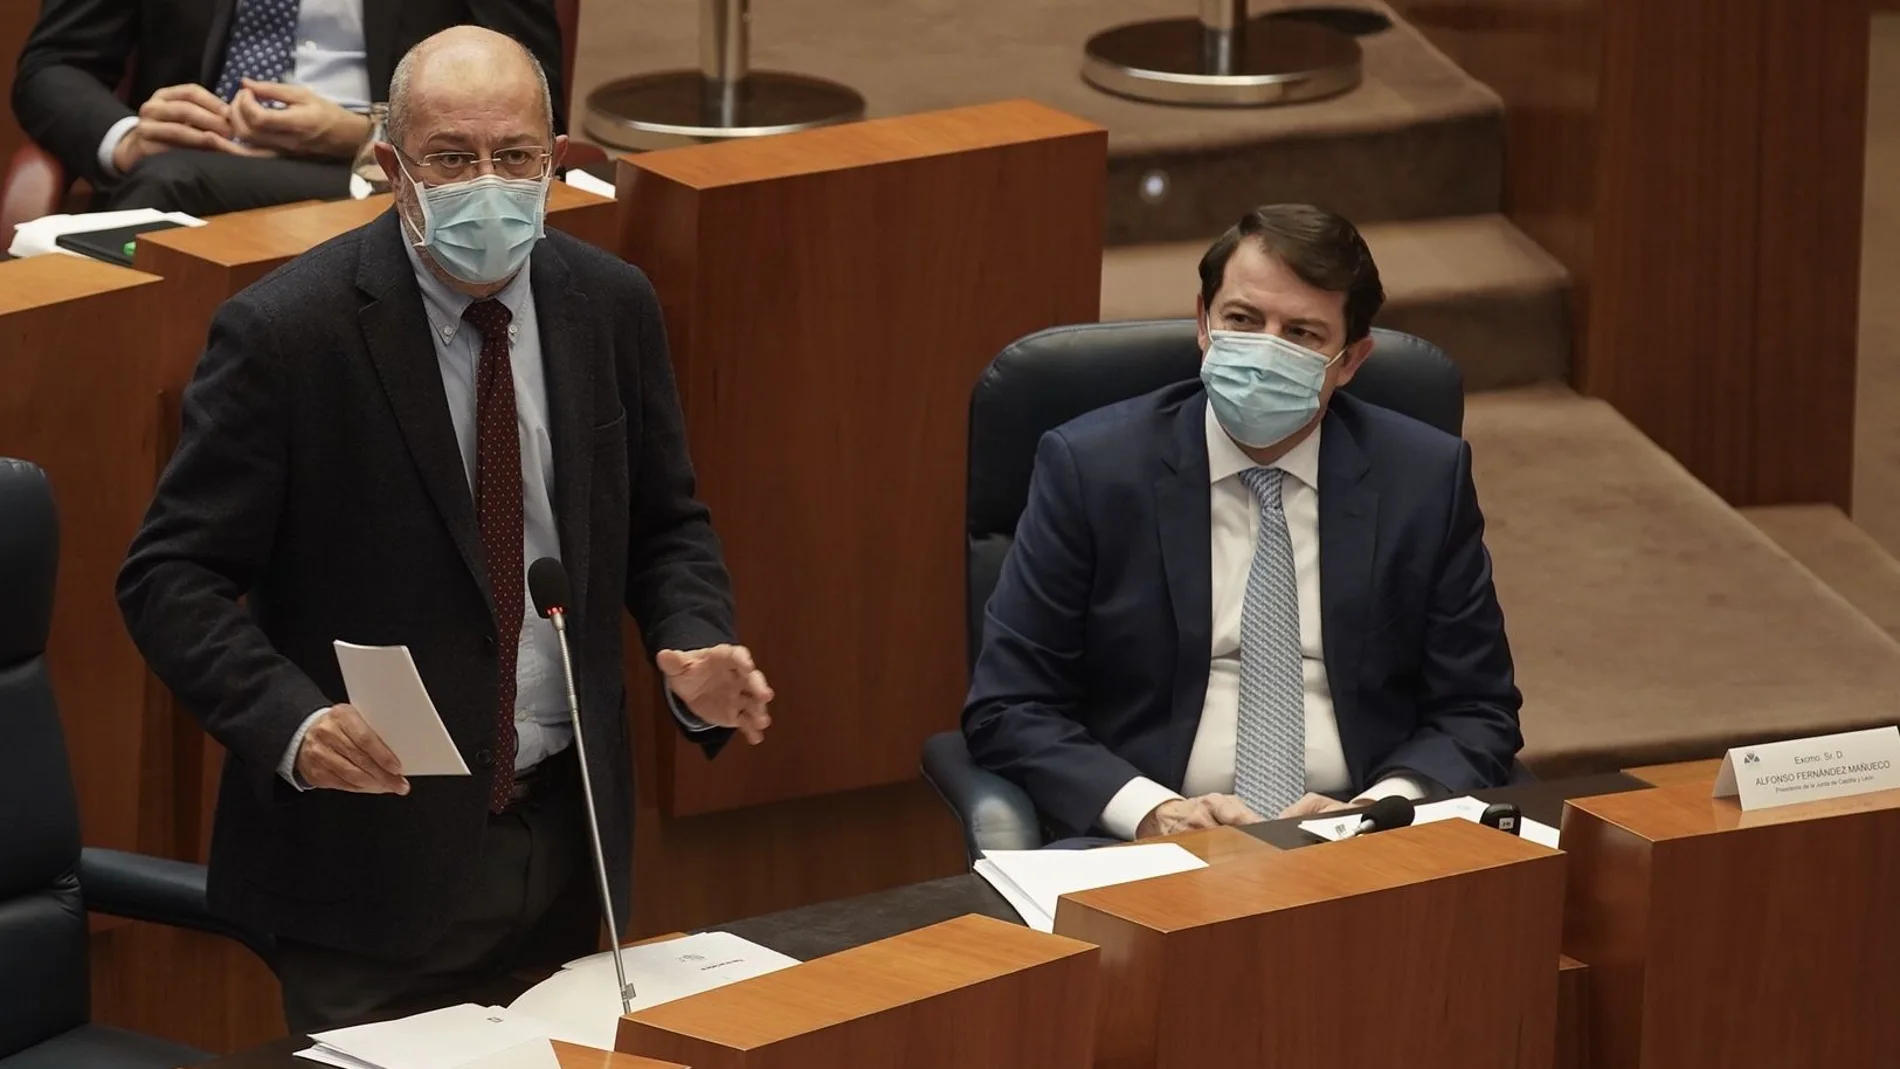 El vicepresidente Francisco Igea interviene desde su escaño durante el Pleno bajo la atenta mirada del presidente Fernández Mañueco